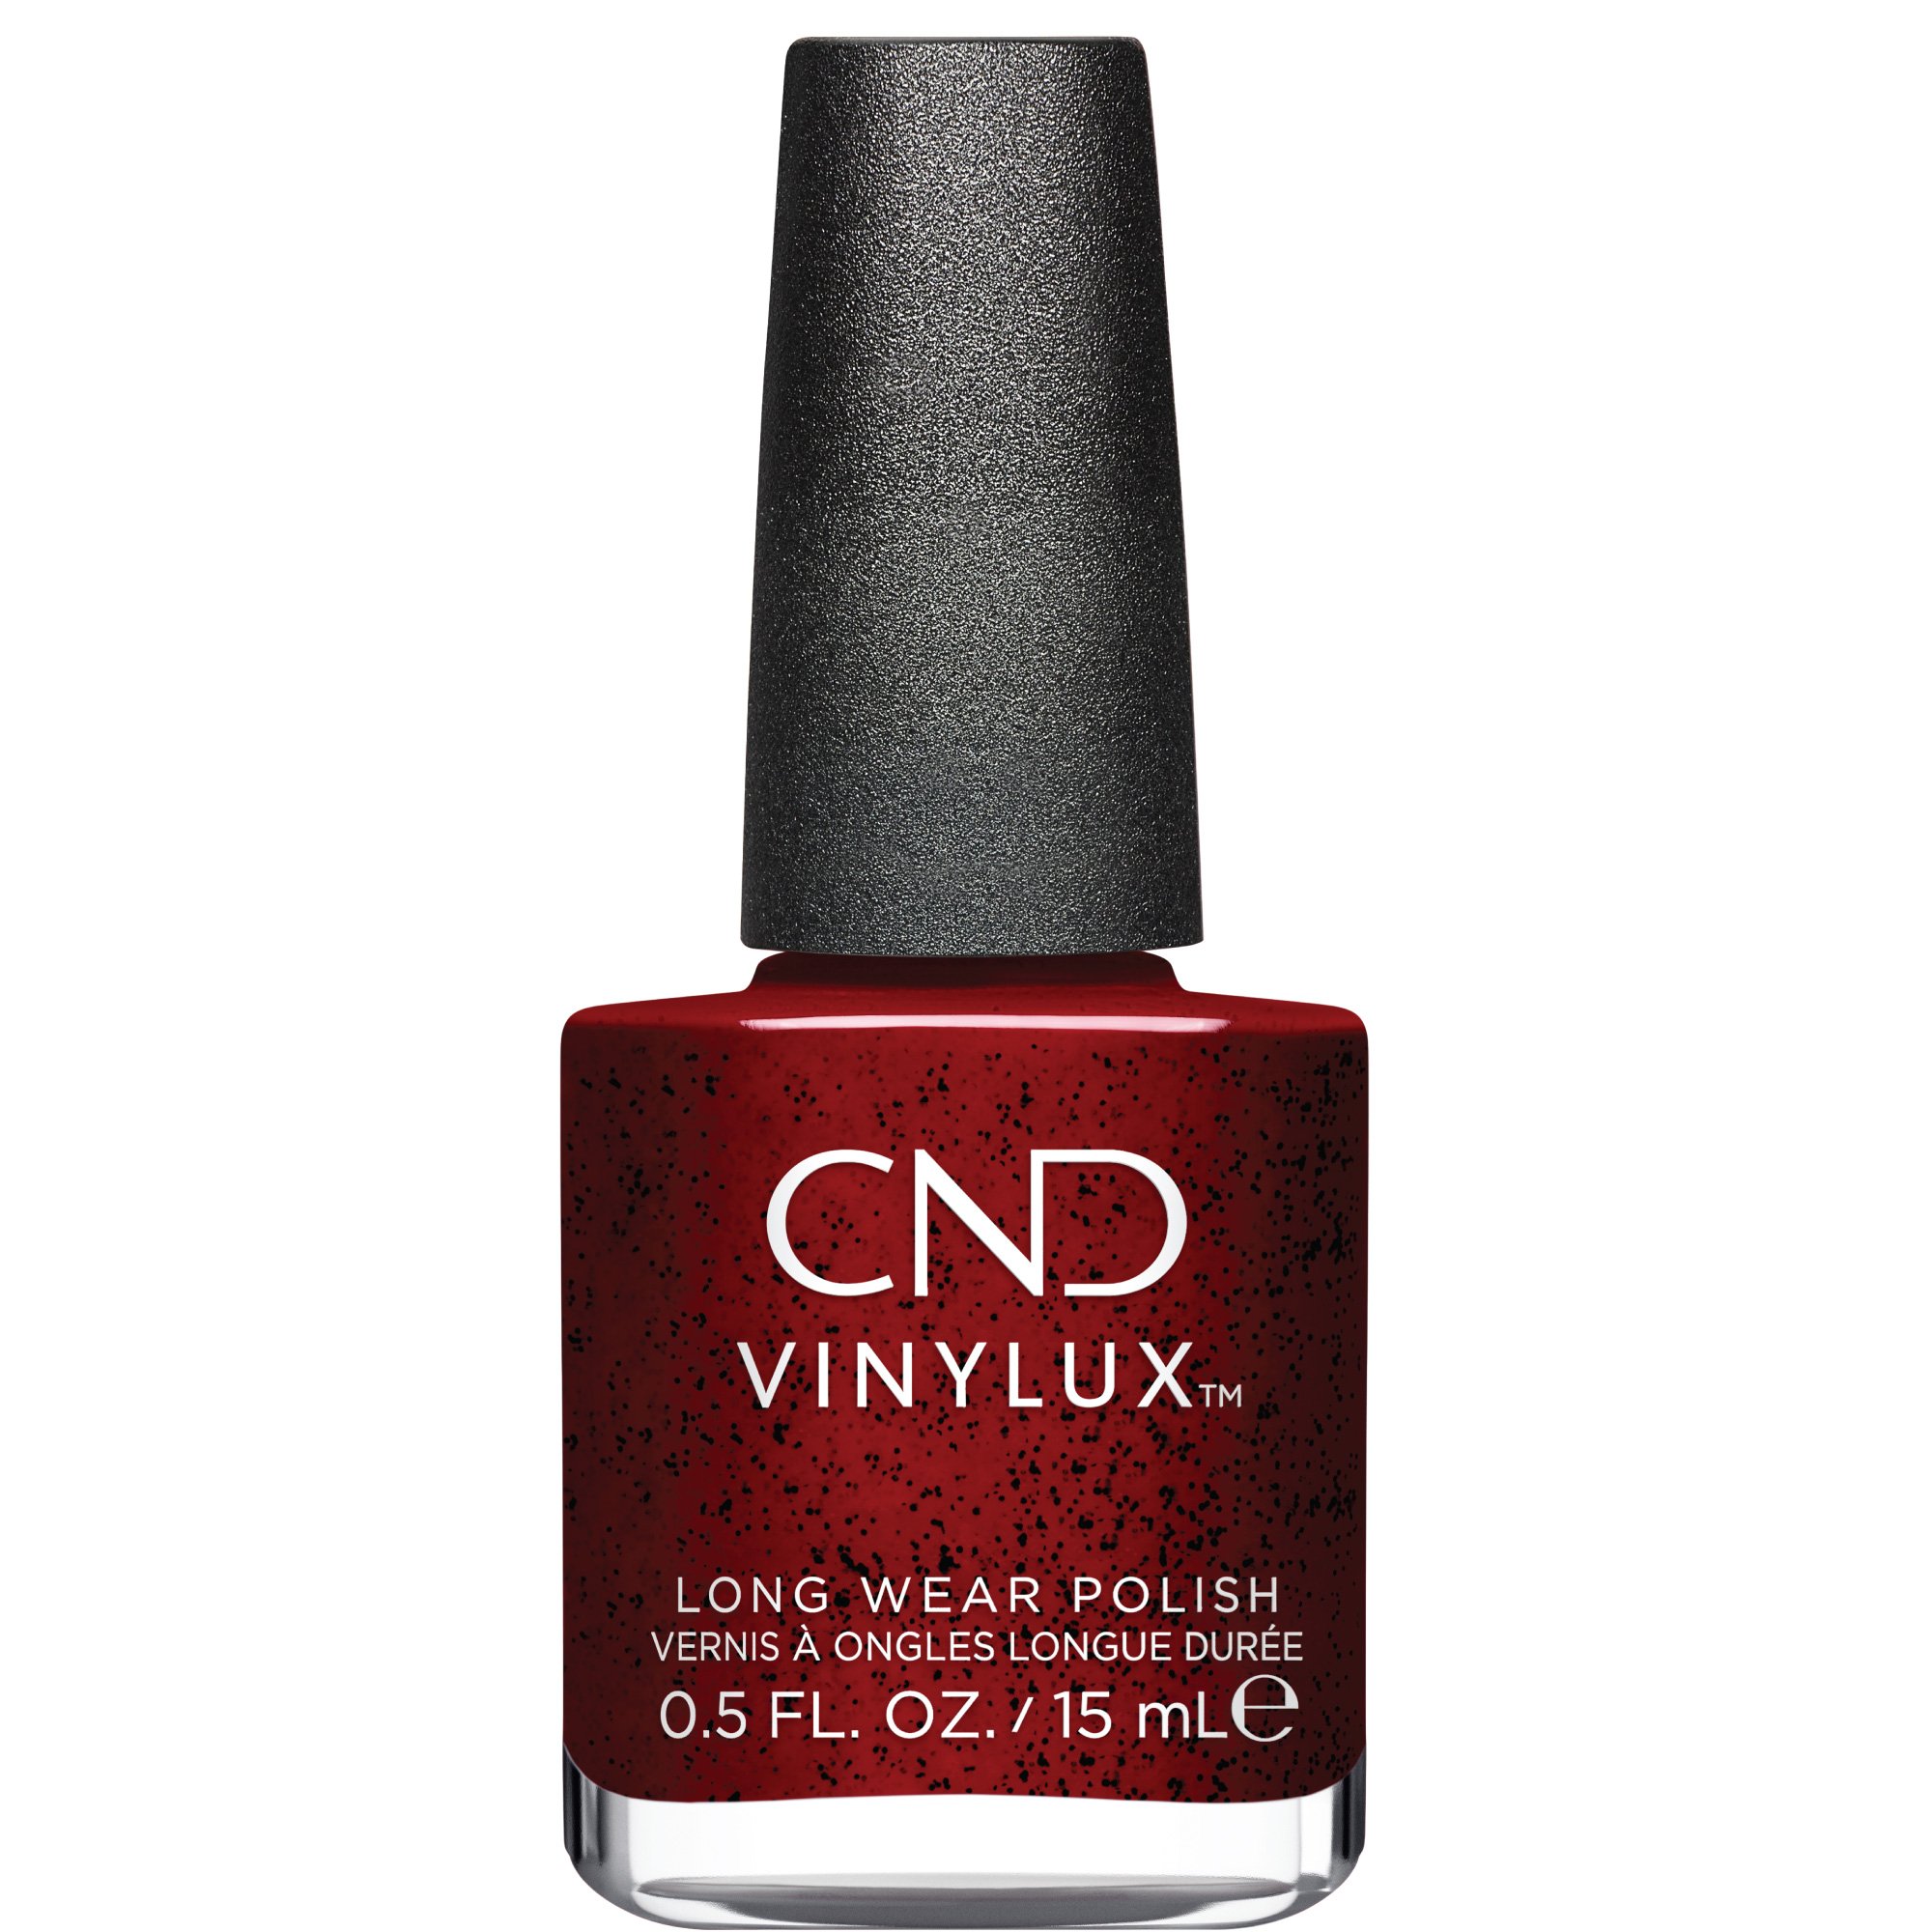 CND høstnyhet Needles & Red #453 VINYLUX, 15 ml